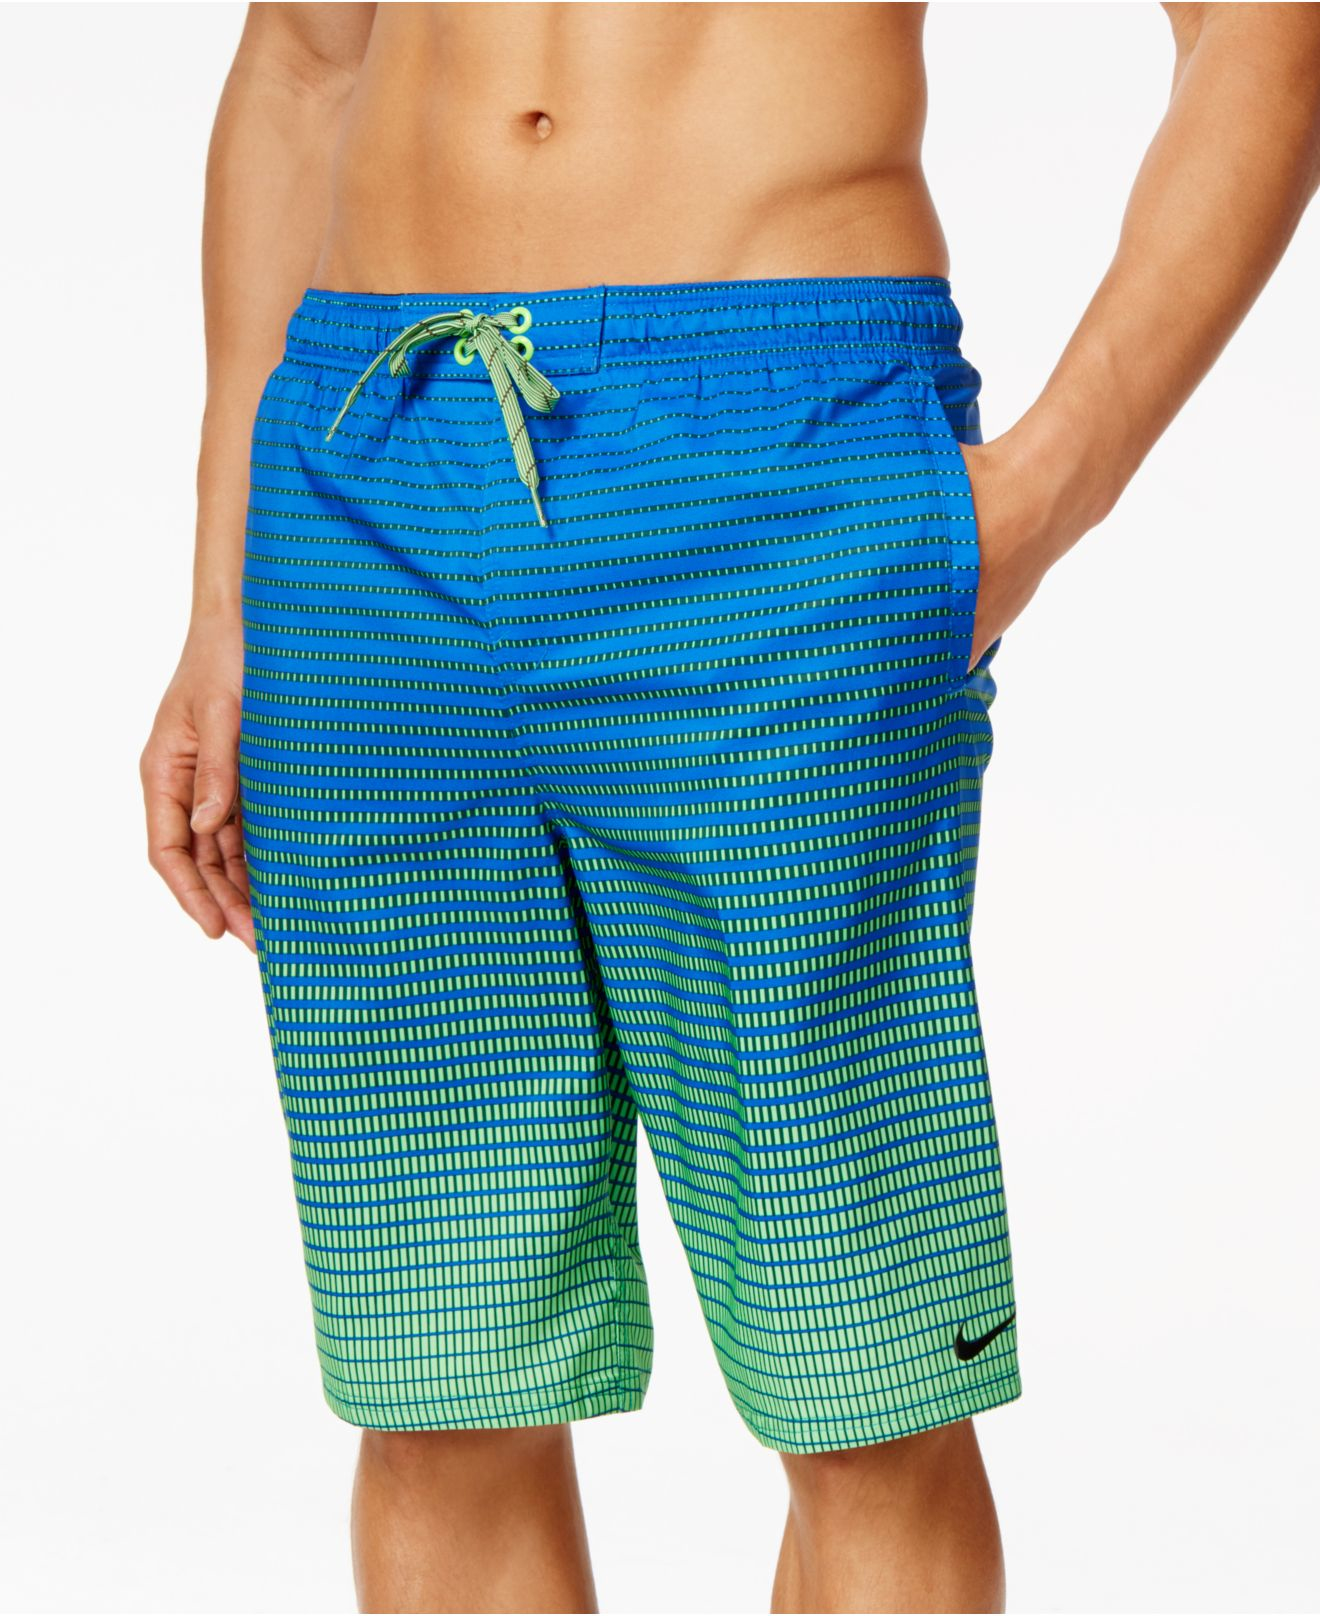 Nike Performance Quick Dry Swim Trunks in Green for Men - Lyst